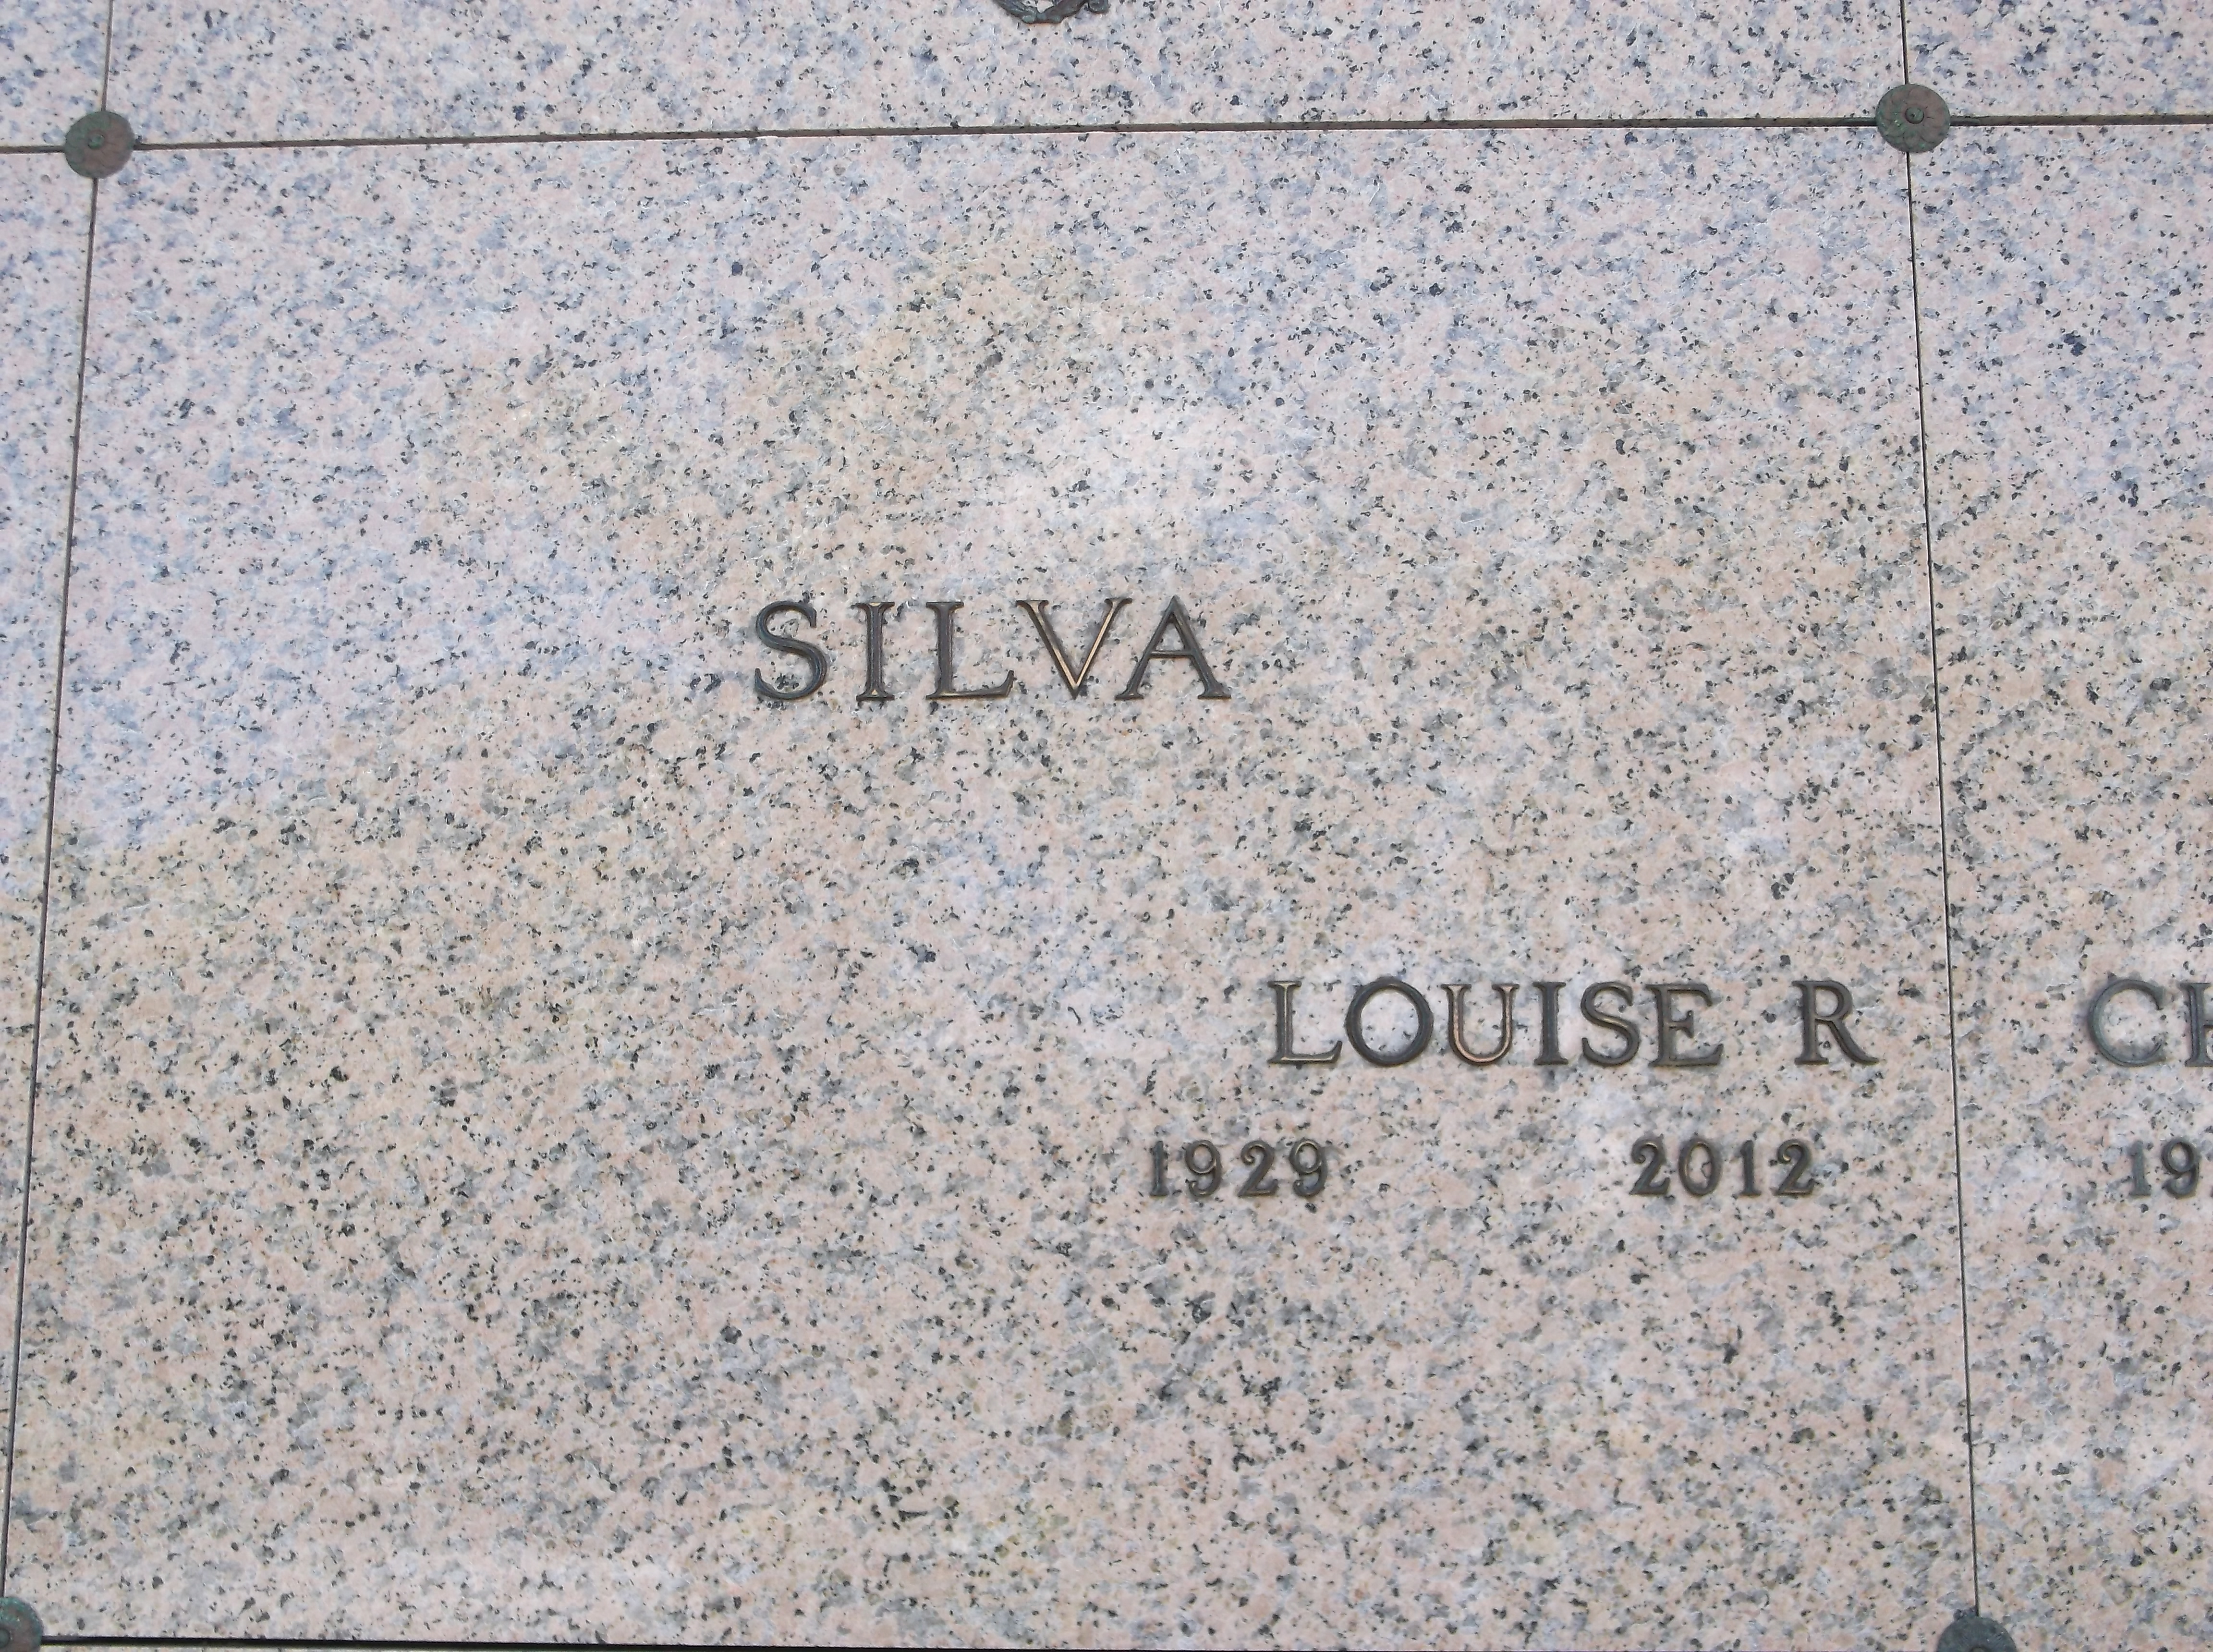 Louise R Silva